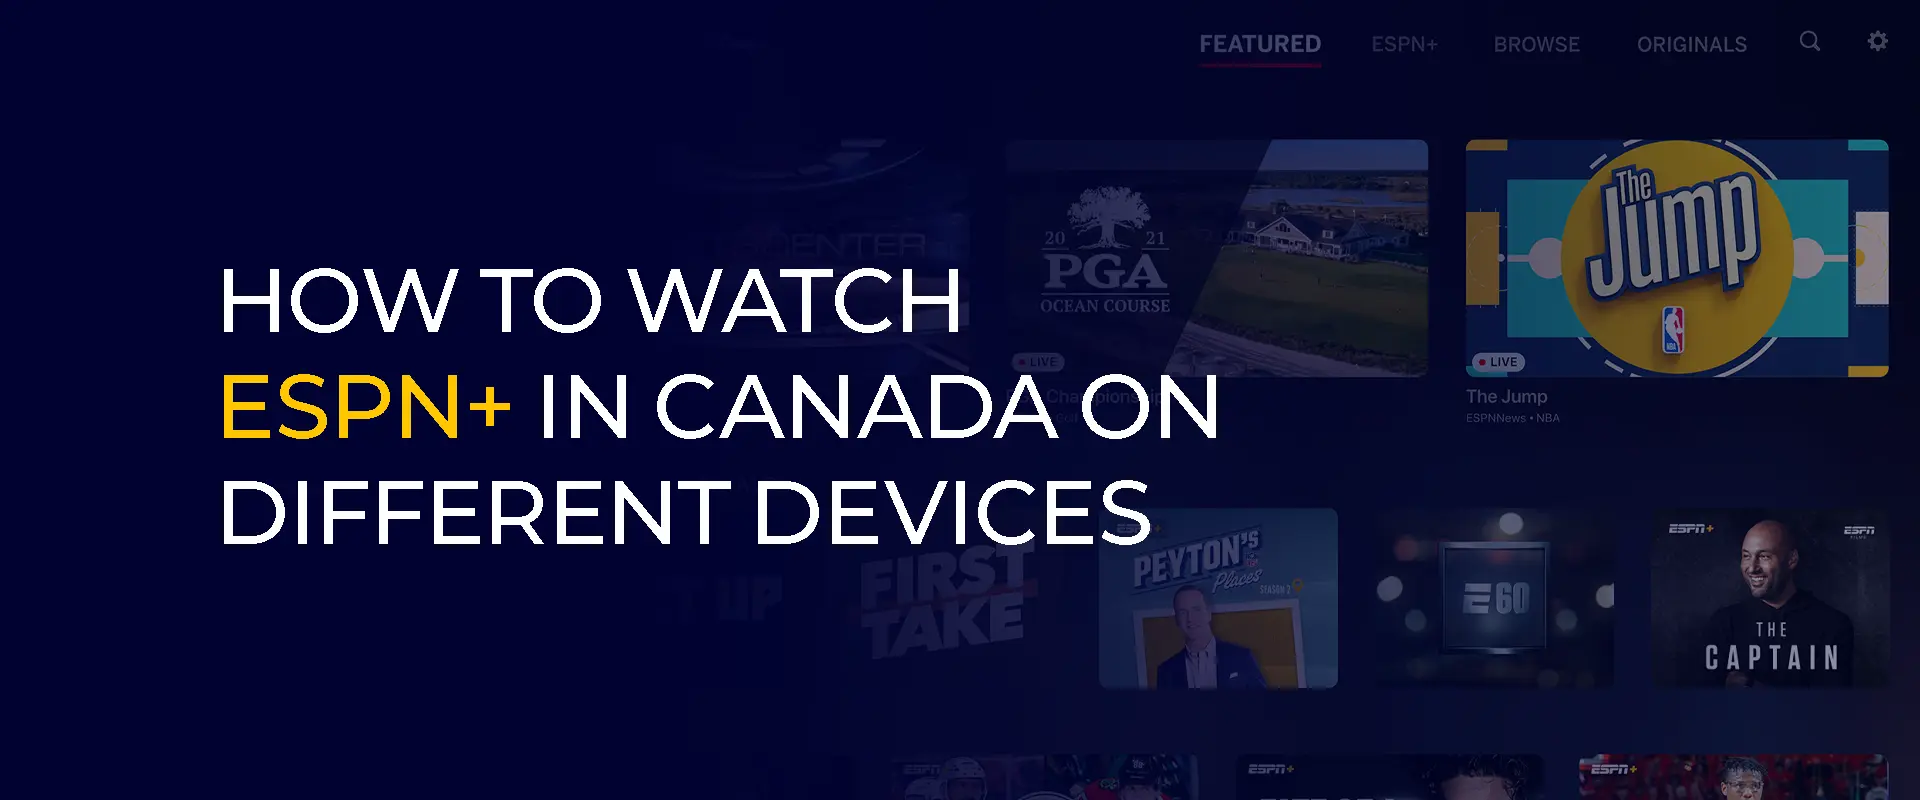 Comment regarder ESPN+ au Canada sur différents appareils